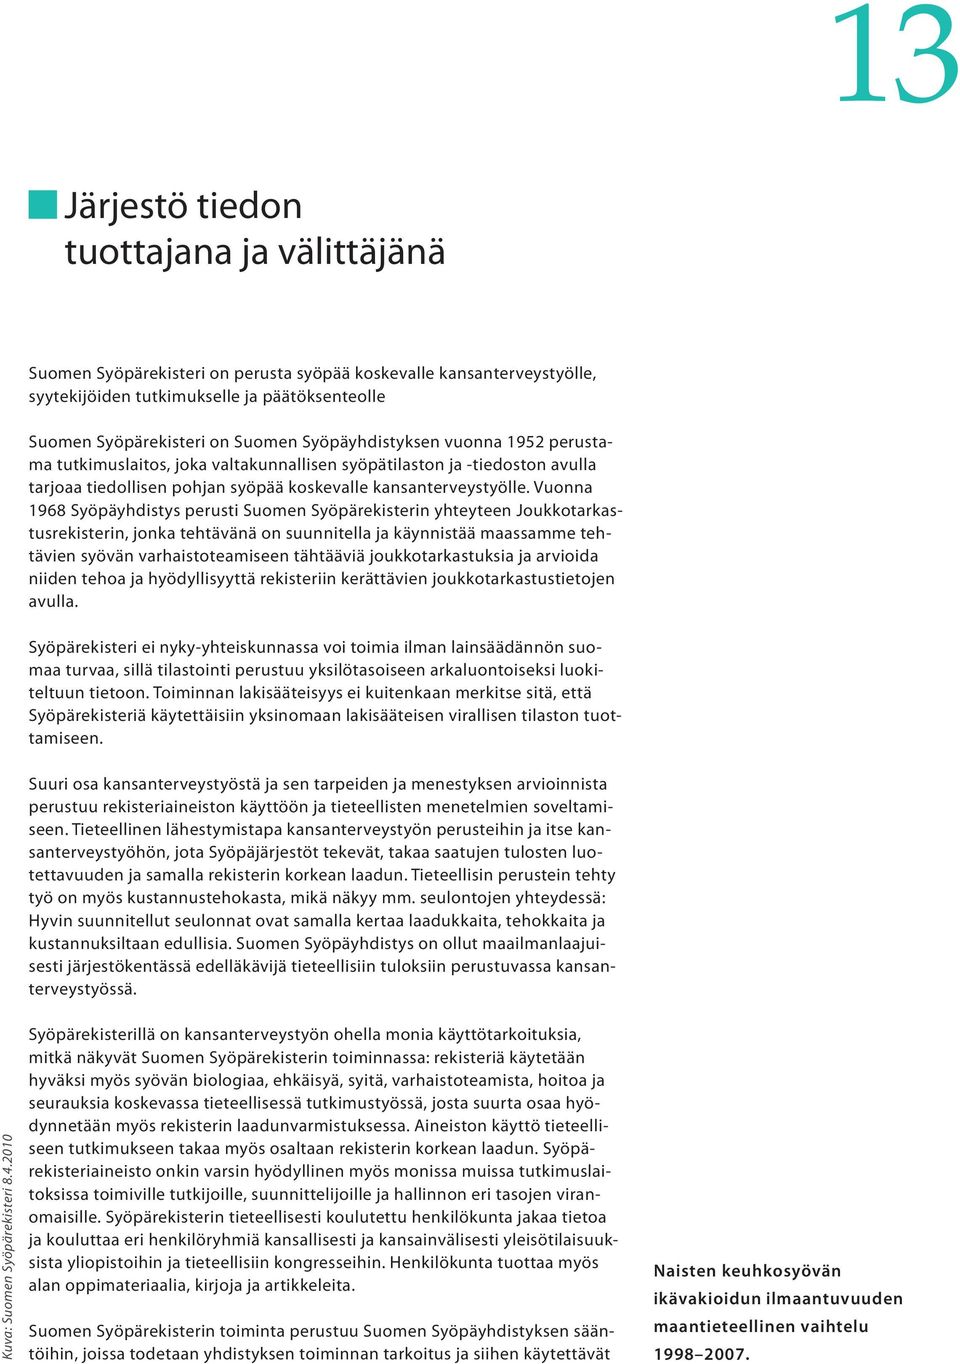 Vuonna 1968 Syöpäyhdistys perusti Suomen Syöpärekisterin yhteyteen Joukkotarkastusrekisterin, jonka tehtävänä on suunnitella ja käynnistää maassamme tehtävien syövän varhaistoteamiseen tähtääviä